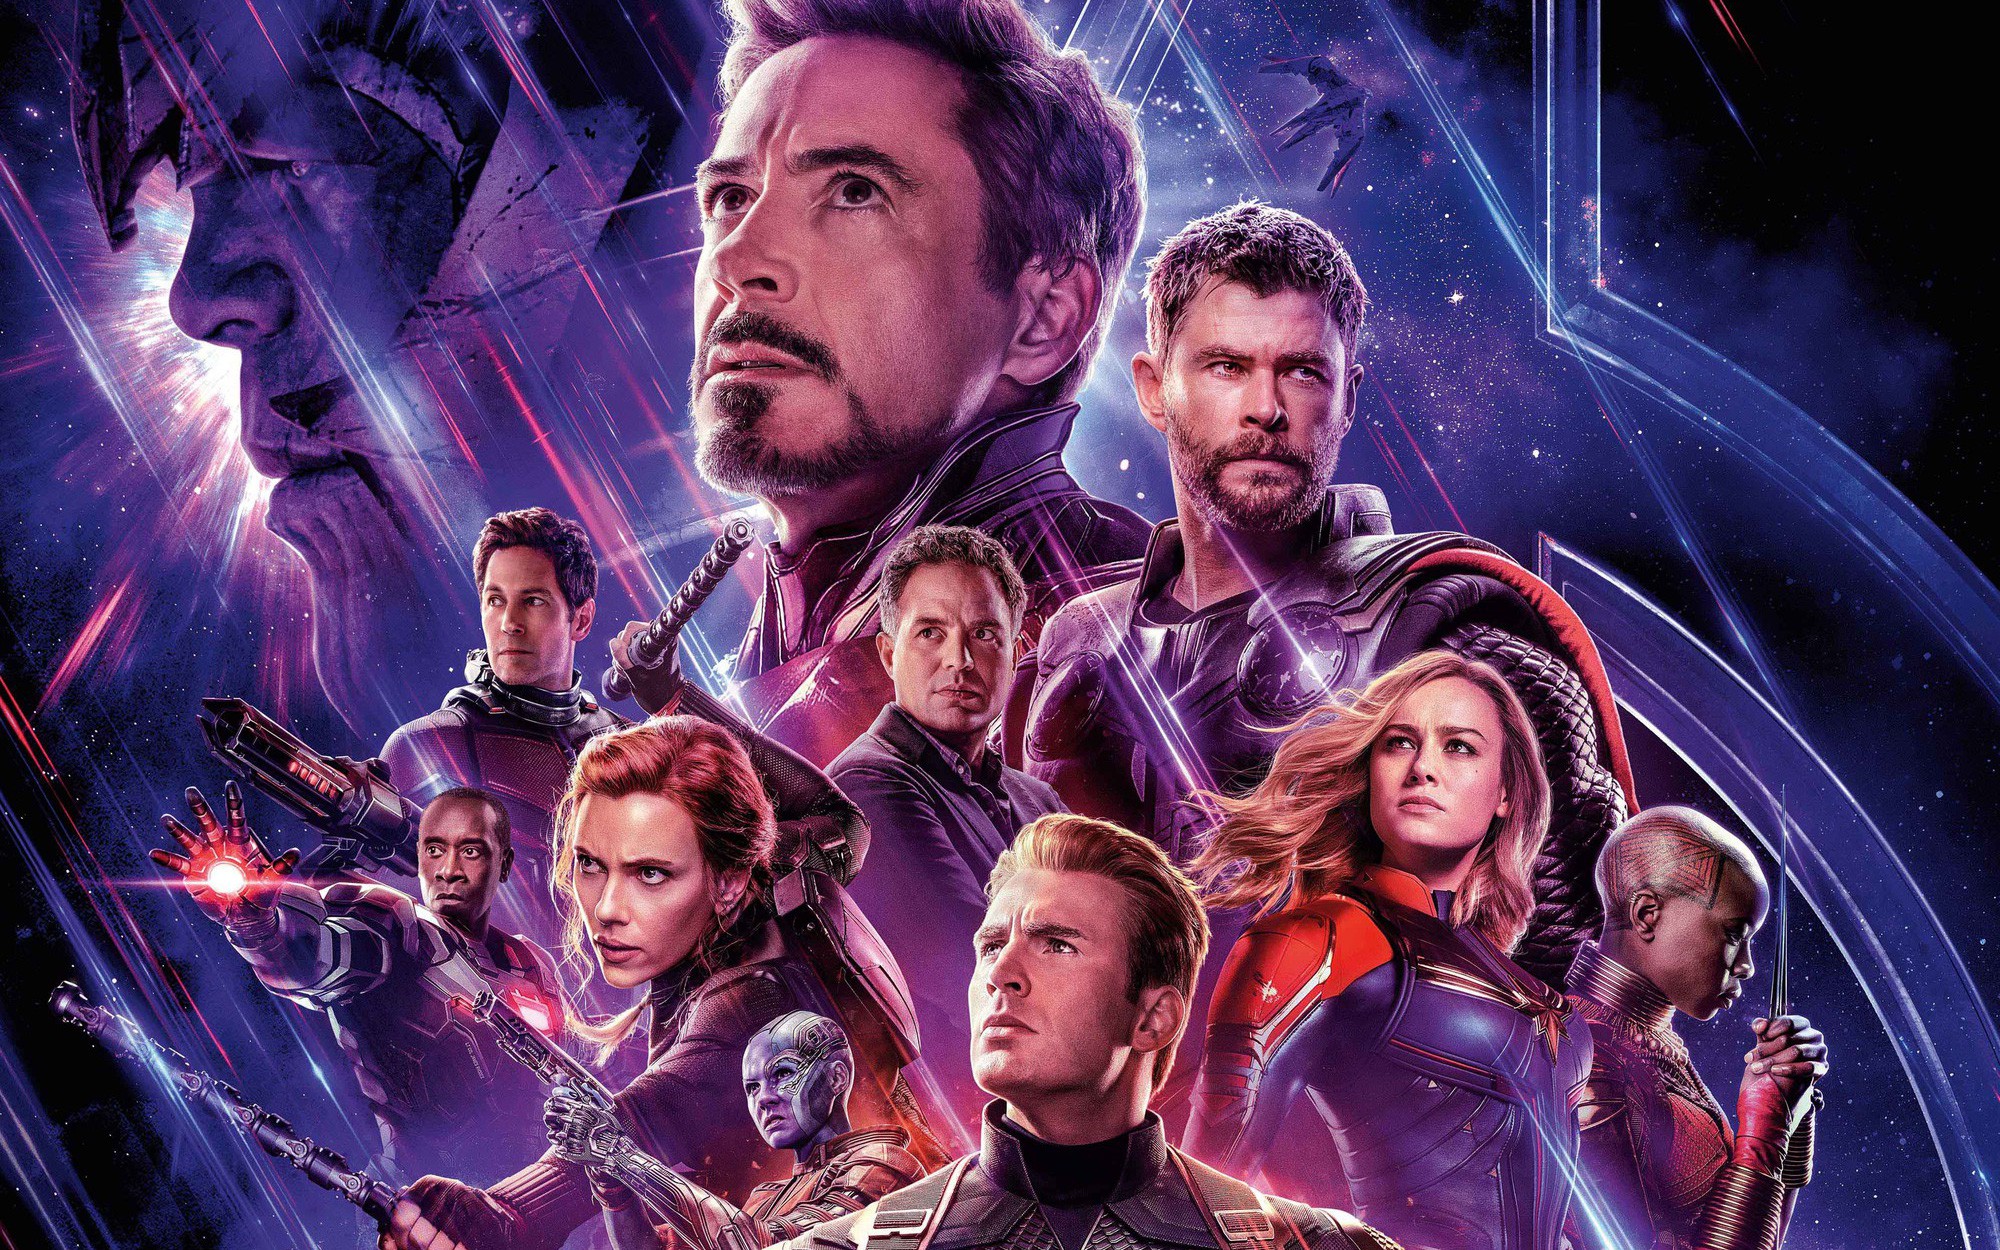 Avengers: Endgame: Bạn yêu thích các siêu anh hùng của Marvel? Hãy xem ngay bức ảnh liên quan đến Avengers: Endgame để đắm chìm trong câu chuyện đầy kịch tính của Iron Man, Captain America và những người bạn trong cuộc chiến chống lại Thanos.